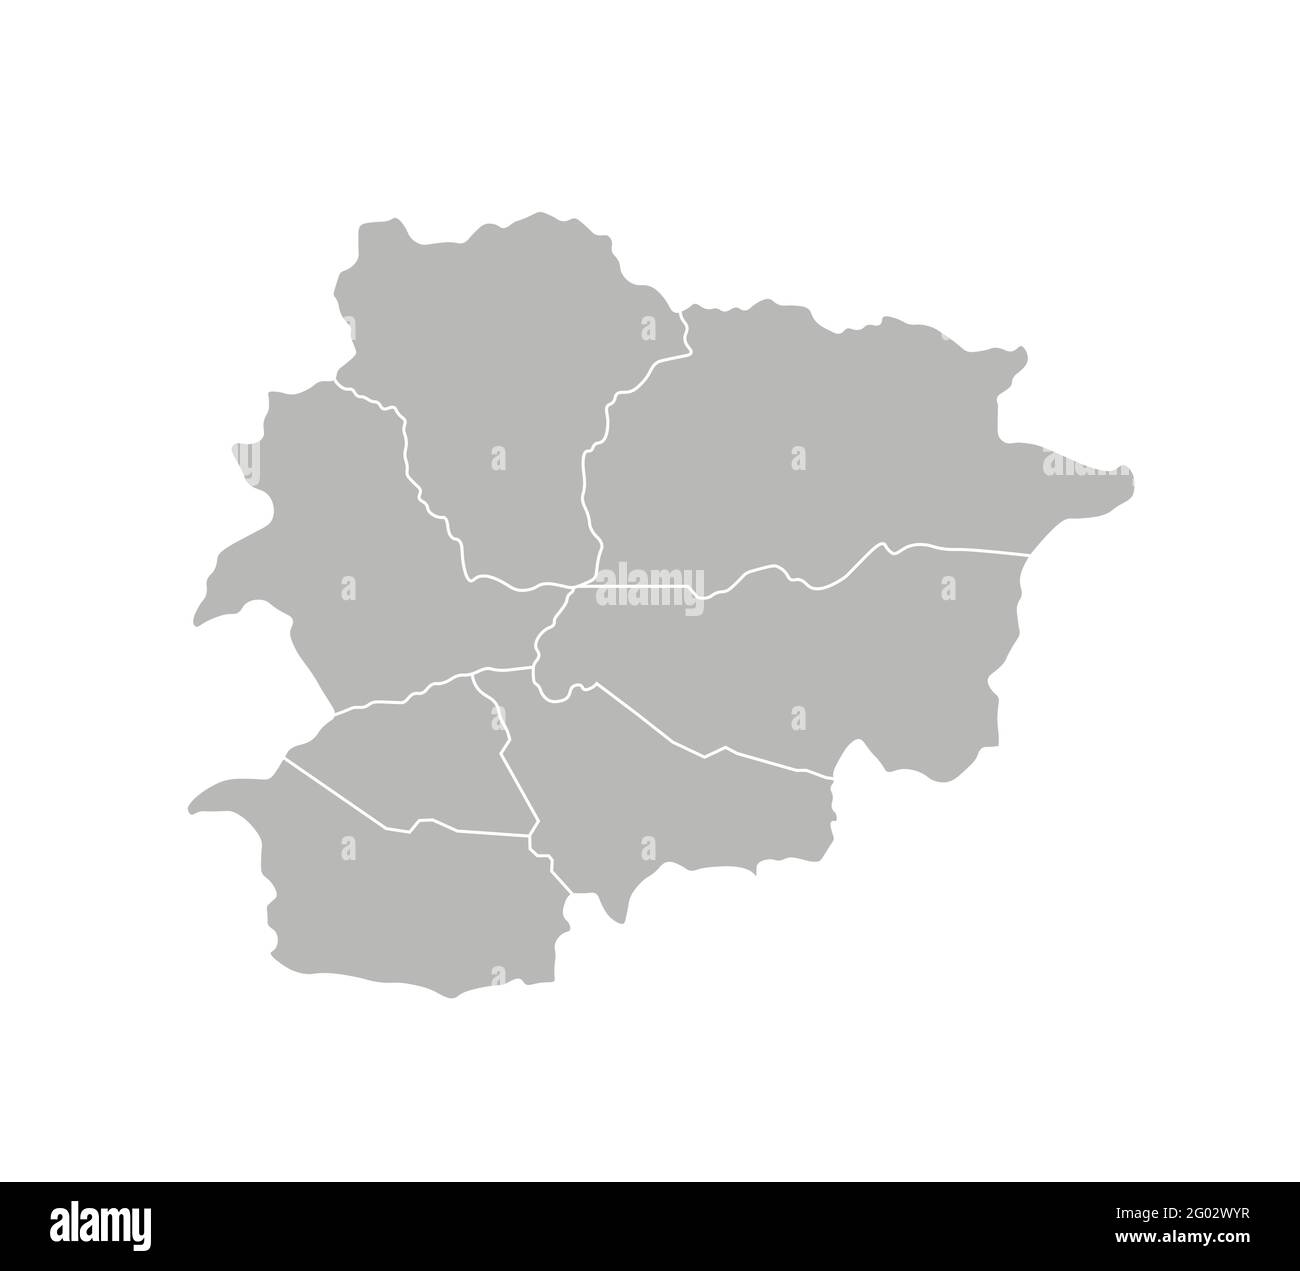 Vektor isolierte Illustration einer vereinfachten Verwaltungskarte von Andorra. Grenzen der Gemeinden (Regionen). Graue Silhouetten. Weißer Umriss. Stock Vektor